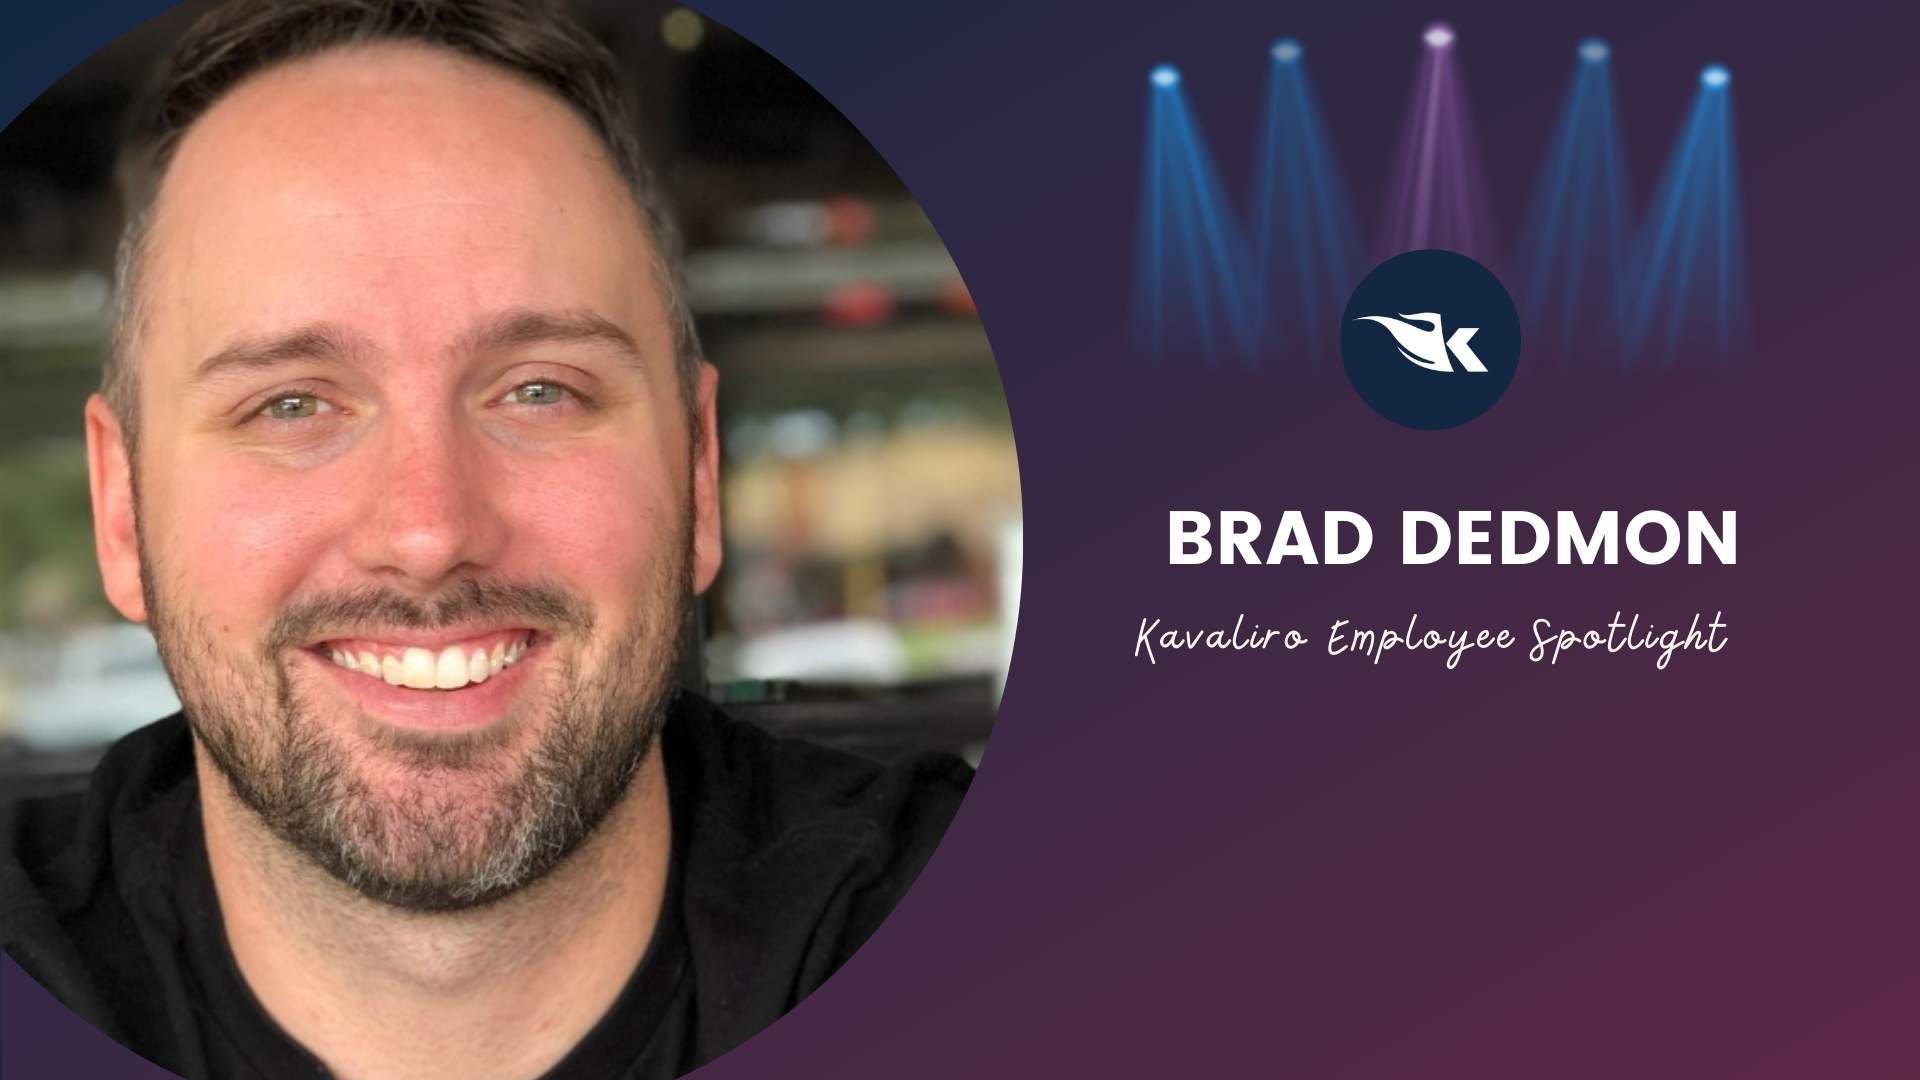 Employee Spotlight: Brad Dedmon